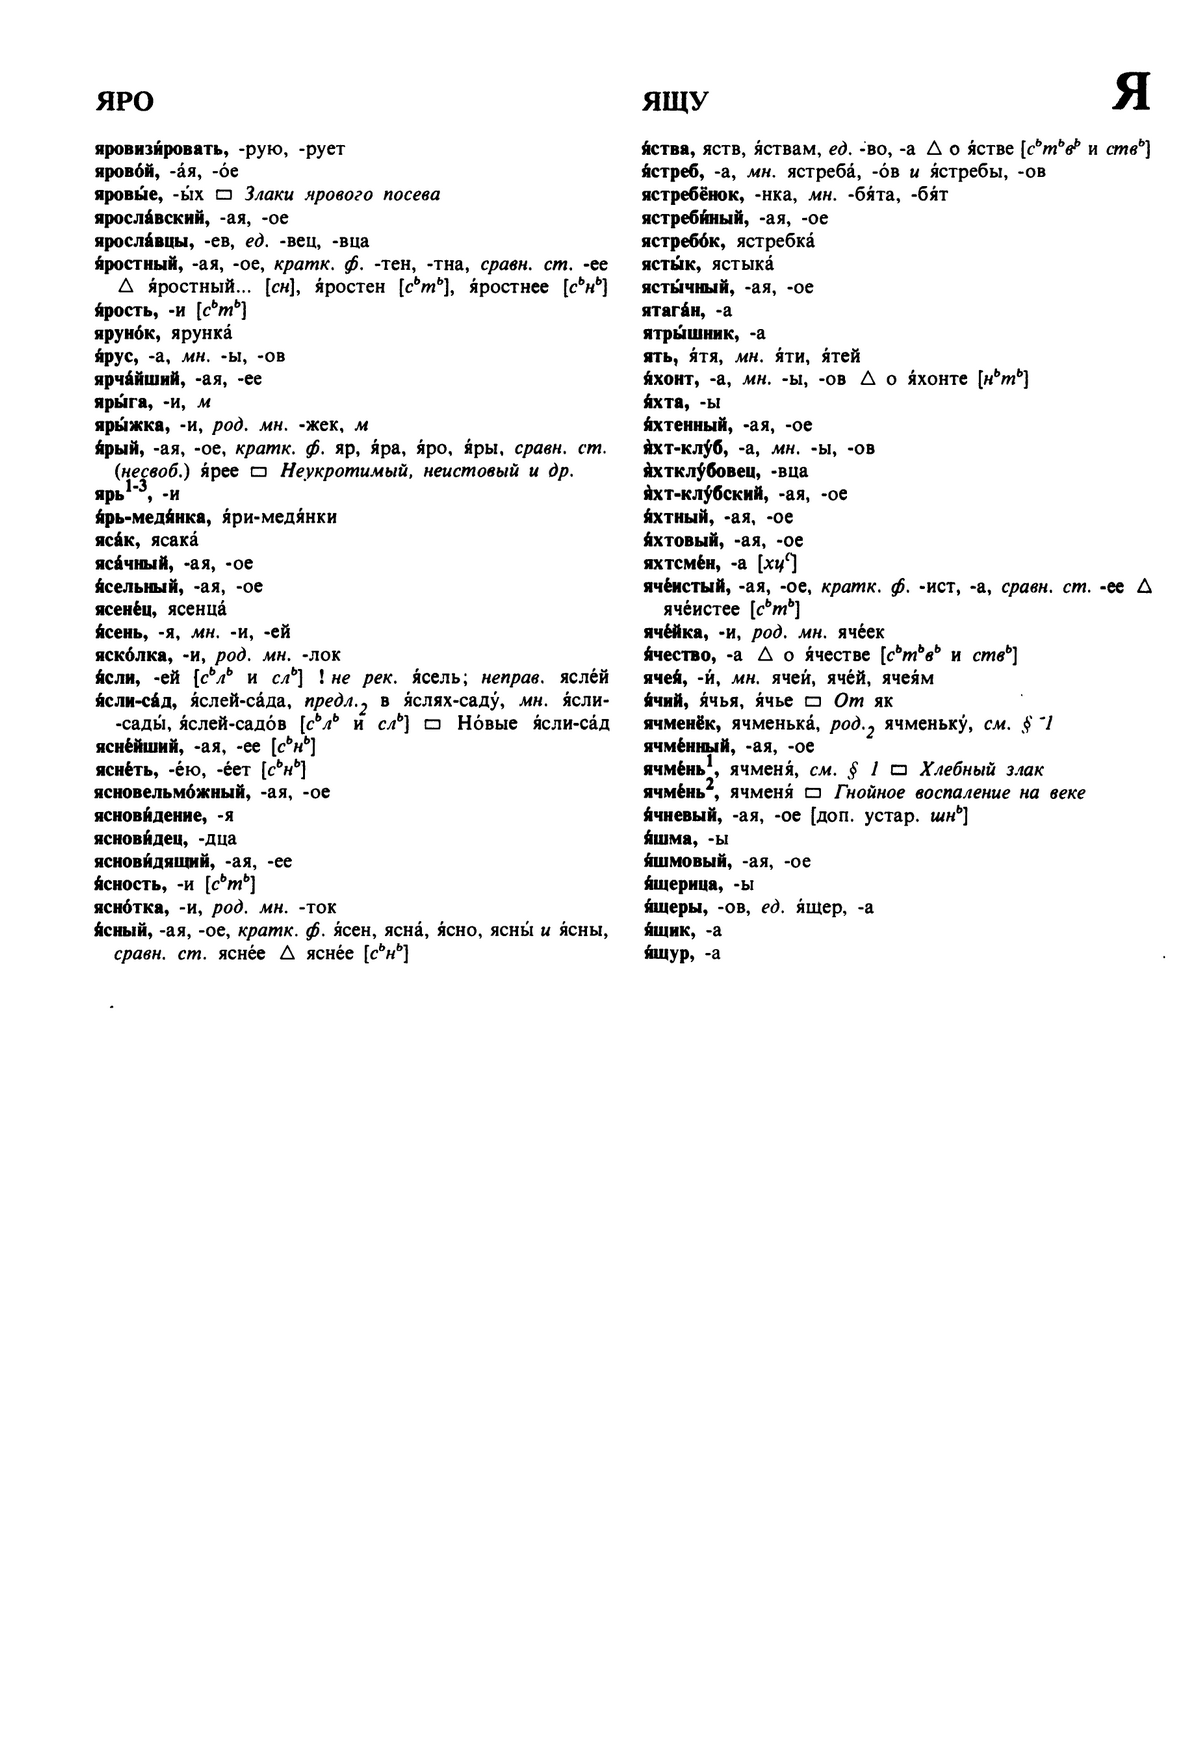 Фотокопия pdf / скан страницы 641 орфоэпического словаря под редакцией Аванесова (5 издание, 1989 год)